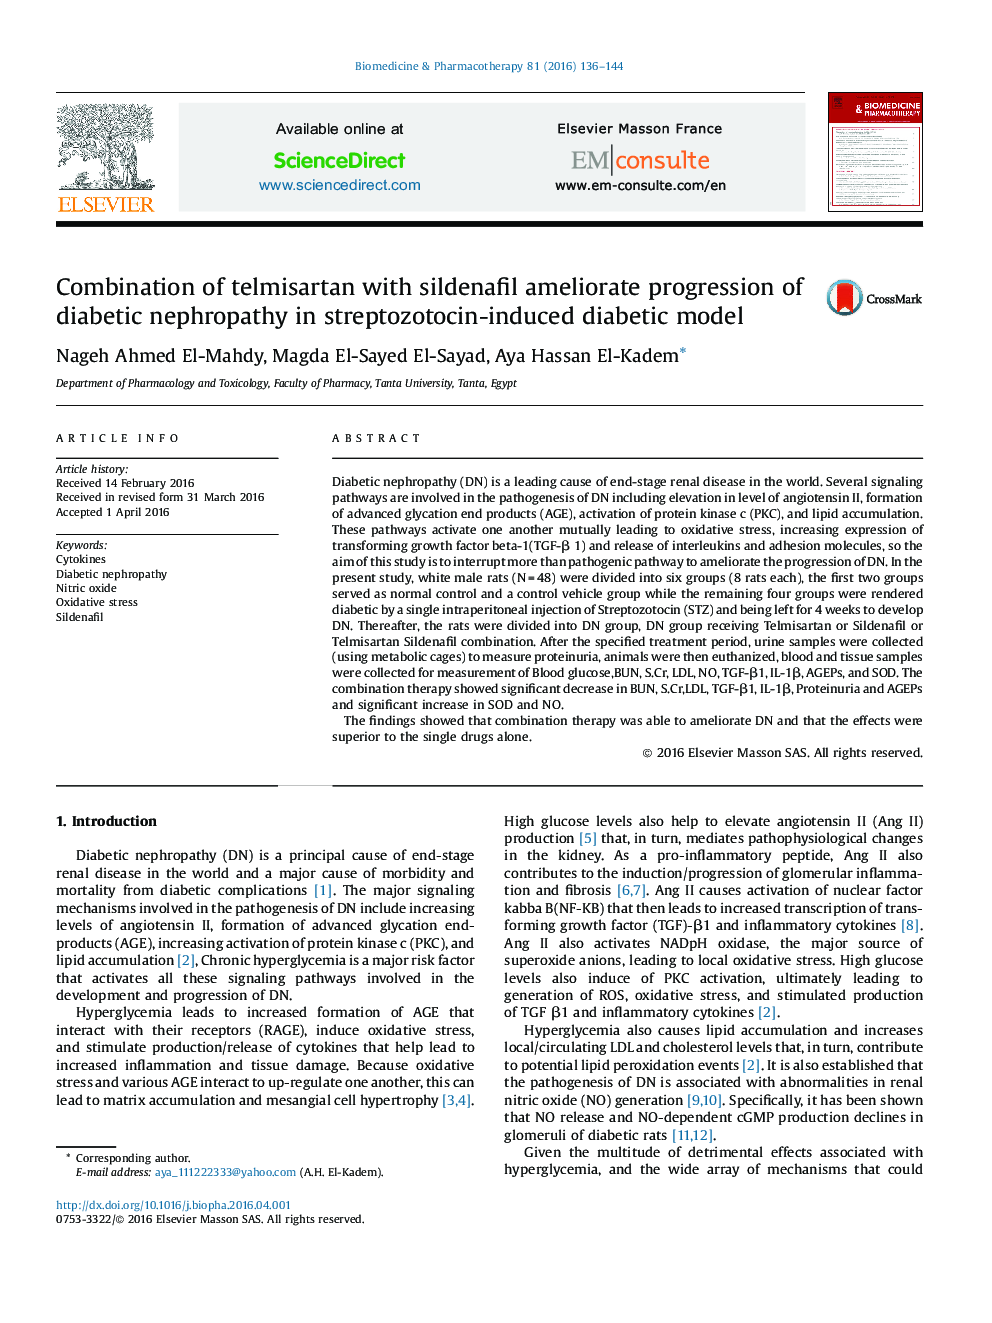 ترکیب تلومیسارتان با پیشرفت سیلدنافیل نفروپاتی دیابتی در مدل دیابتی ناشی از استرپتوزوتوسین 